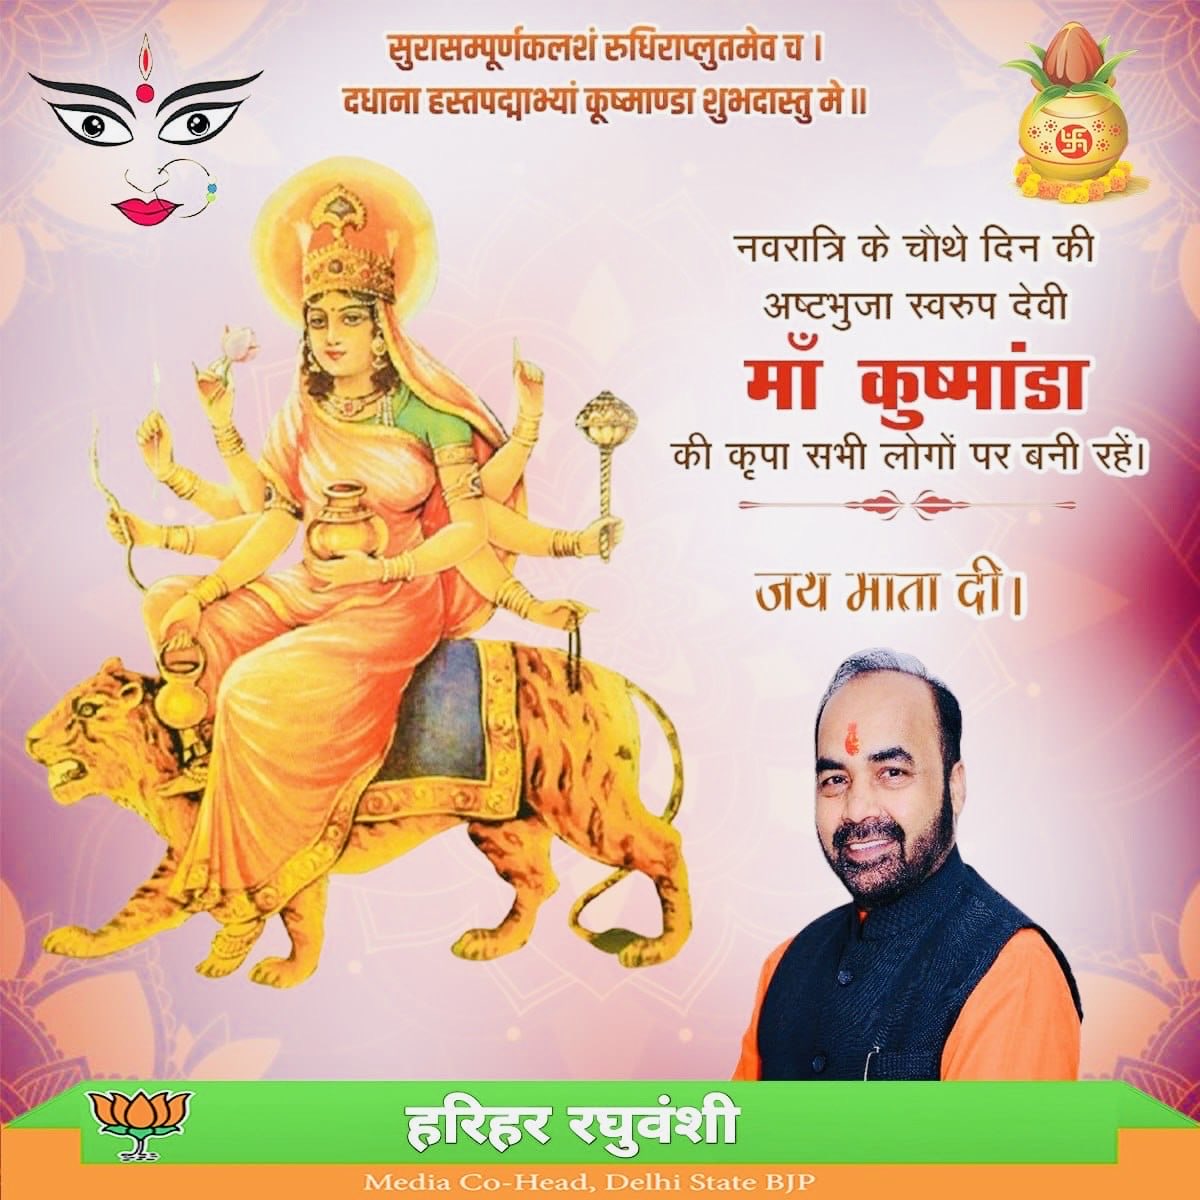 नवरात्रि के चौथे दिन की अष्टभुजा स्वरूप देवी माँ कुष्मांडा की कृपा सभी लोगों पर बनी रहे। #जय_माता_दी